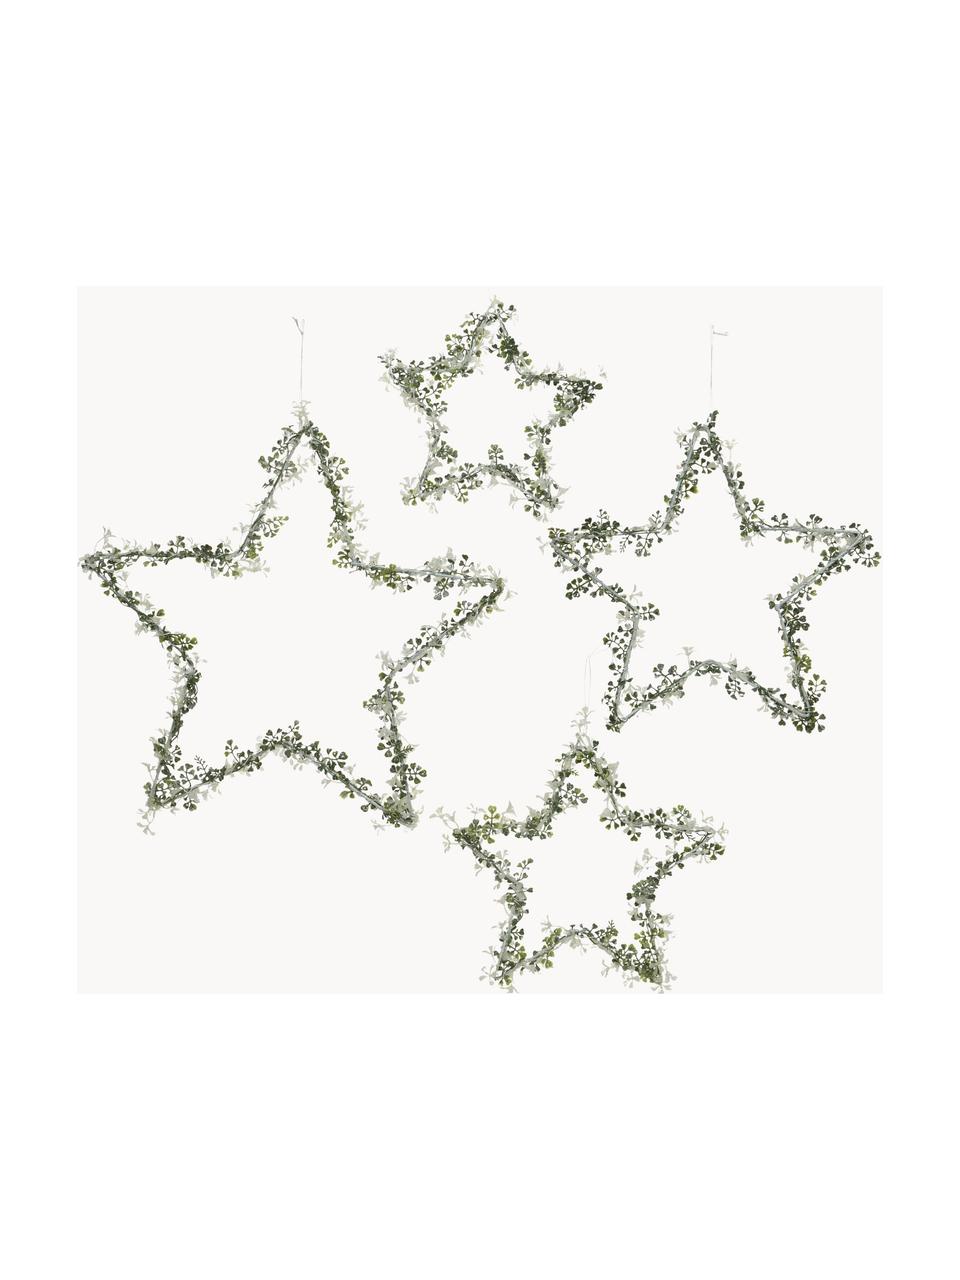 Deko-Sterne Starry in Grün, 4er-Set, Metall, Grüntöne, Set mit verschiedenen Größen